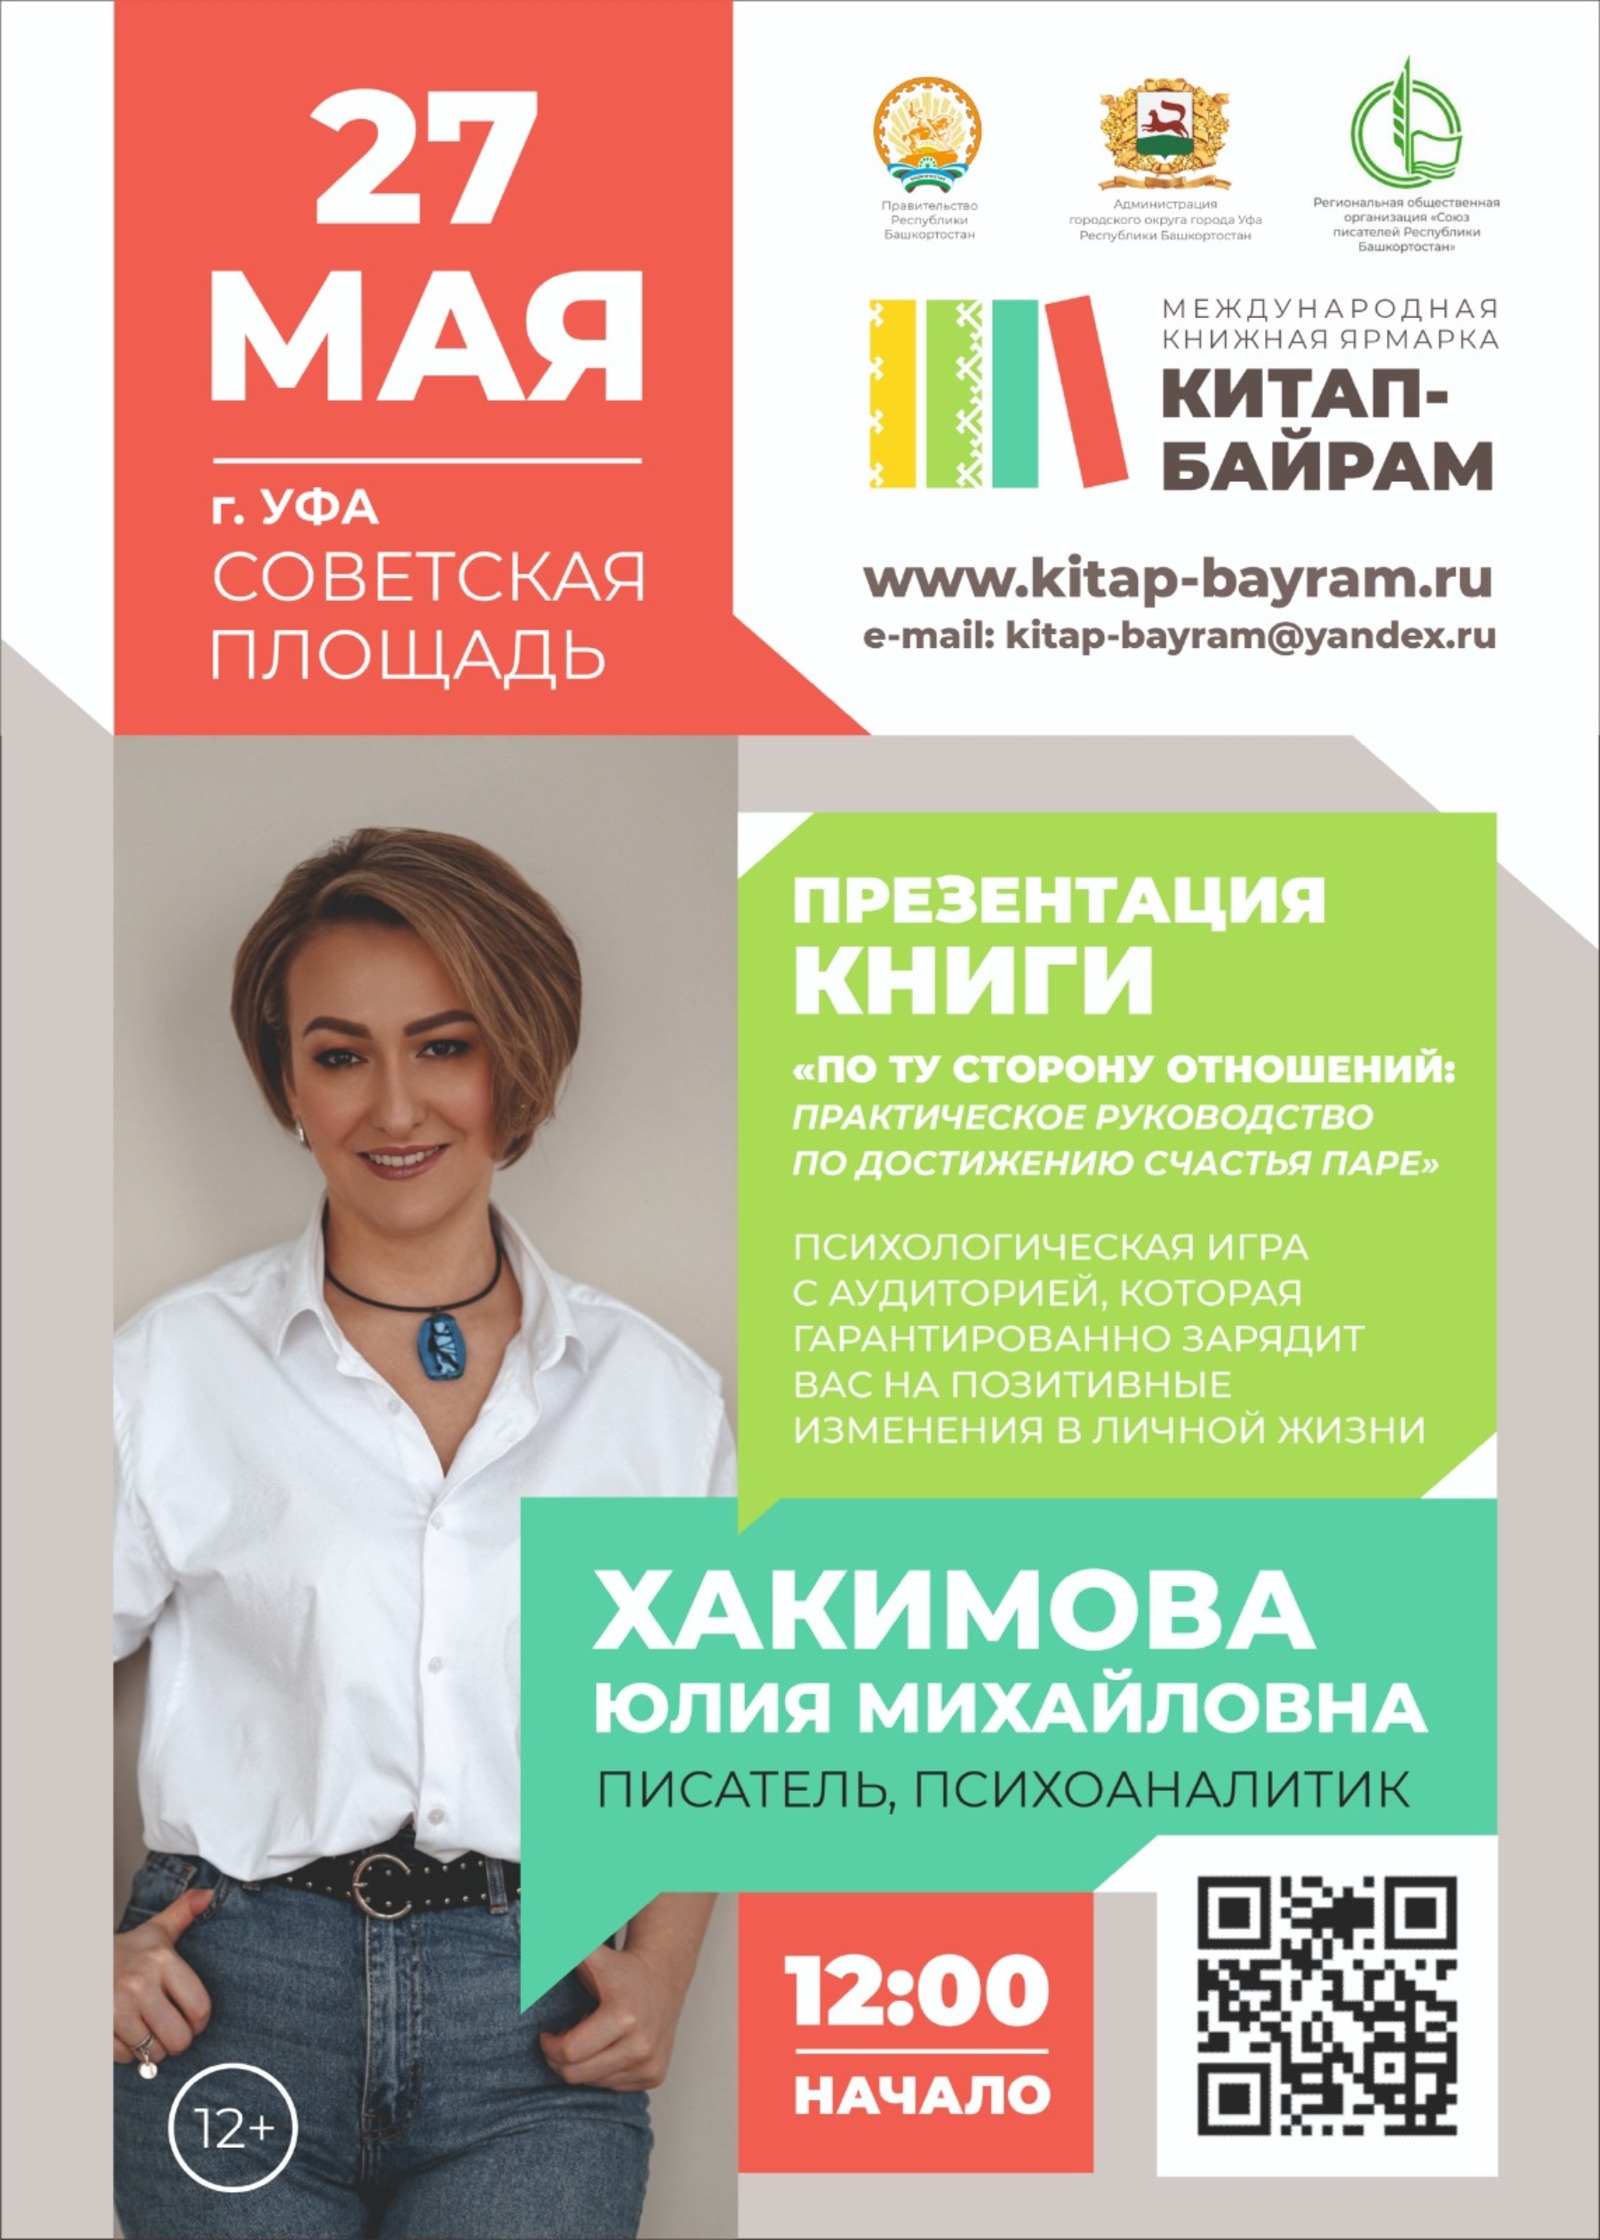 В Башкирской столице состоится  Международная книжная ярмарка  "Китап-Байрам"